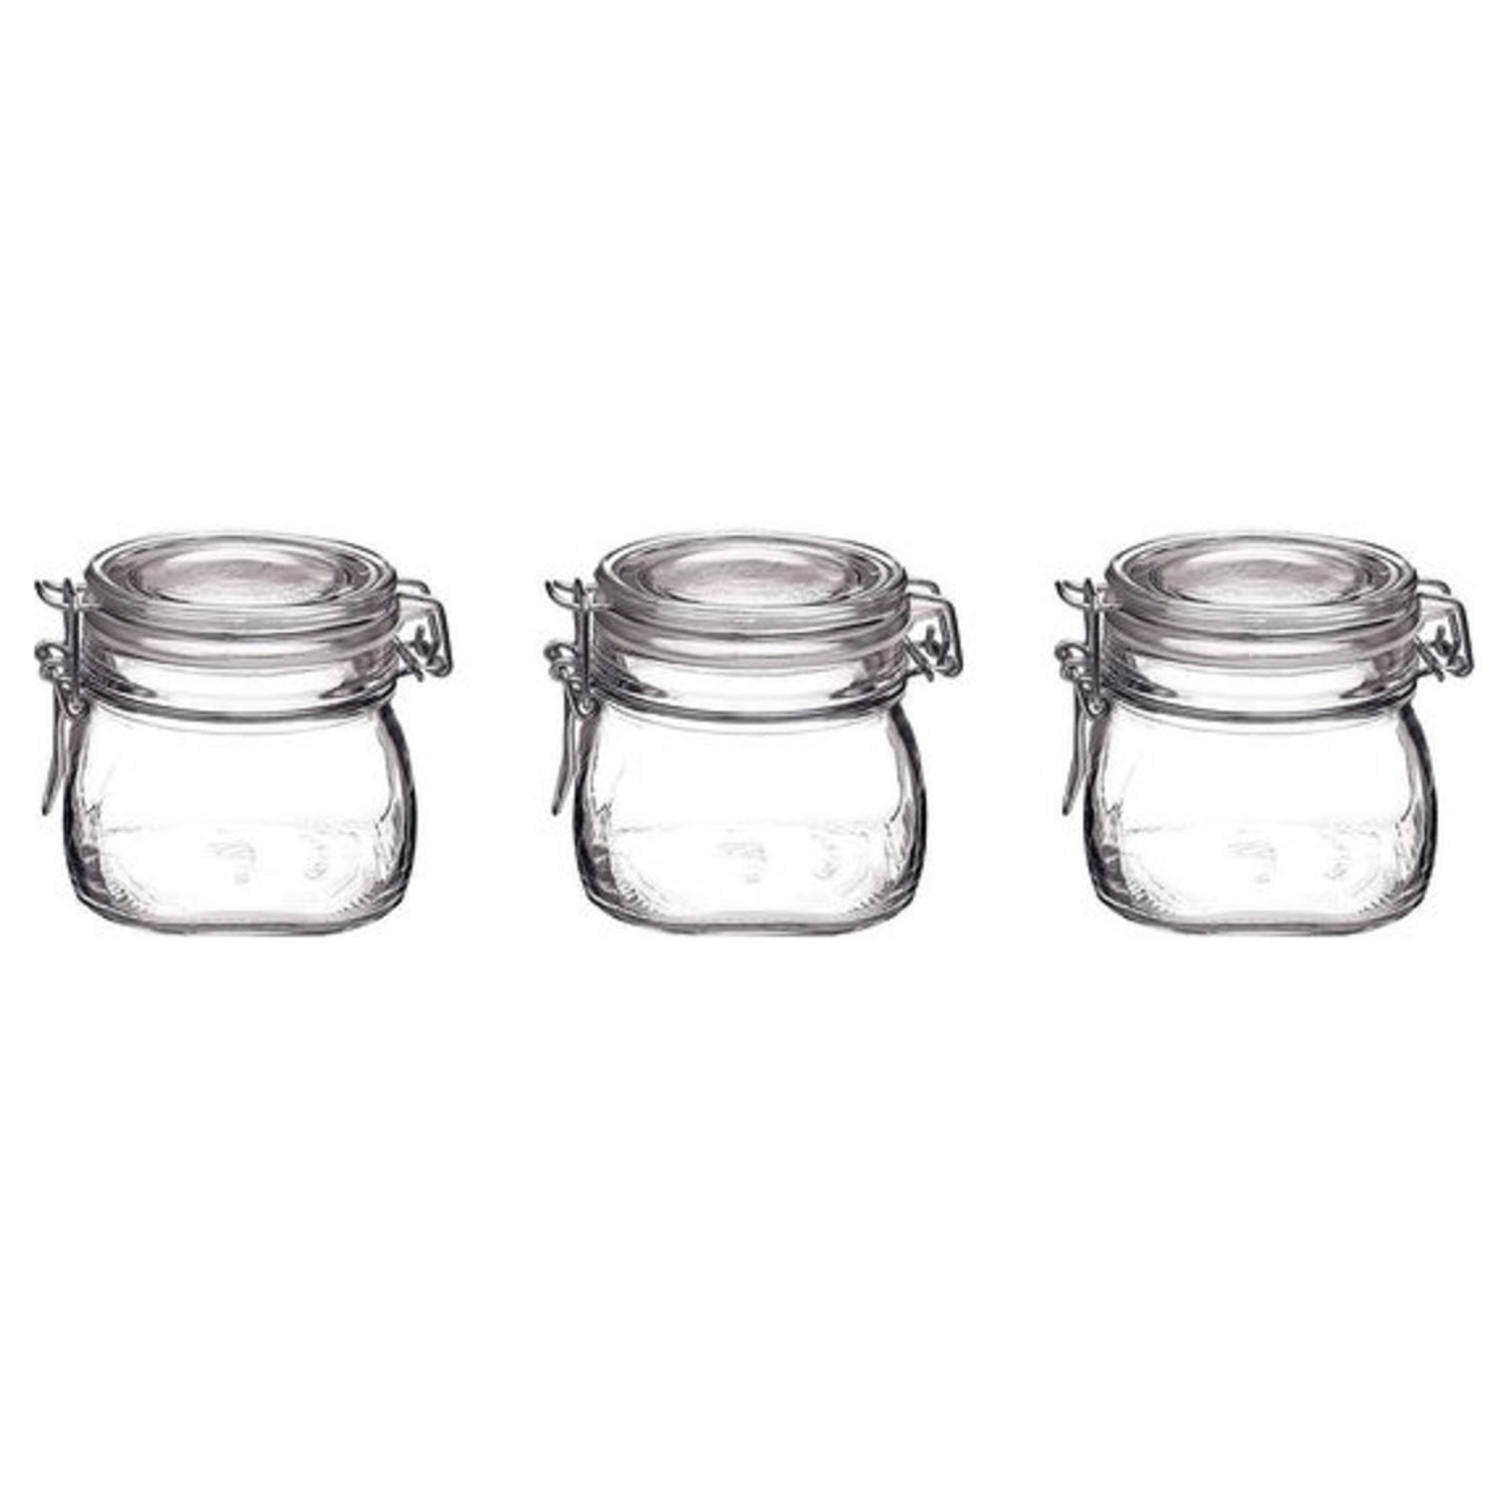 3x Glazen confituren potten/weckpotten 500 ml met beugelsluiting en rubberen ring - Weckpotten